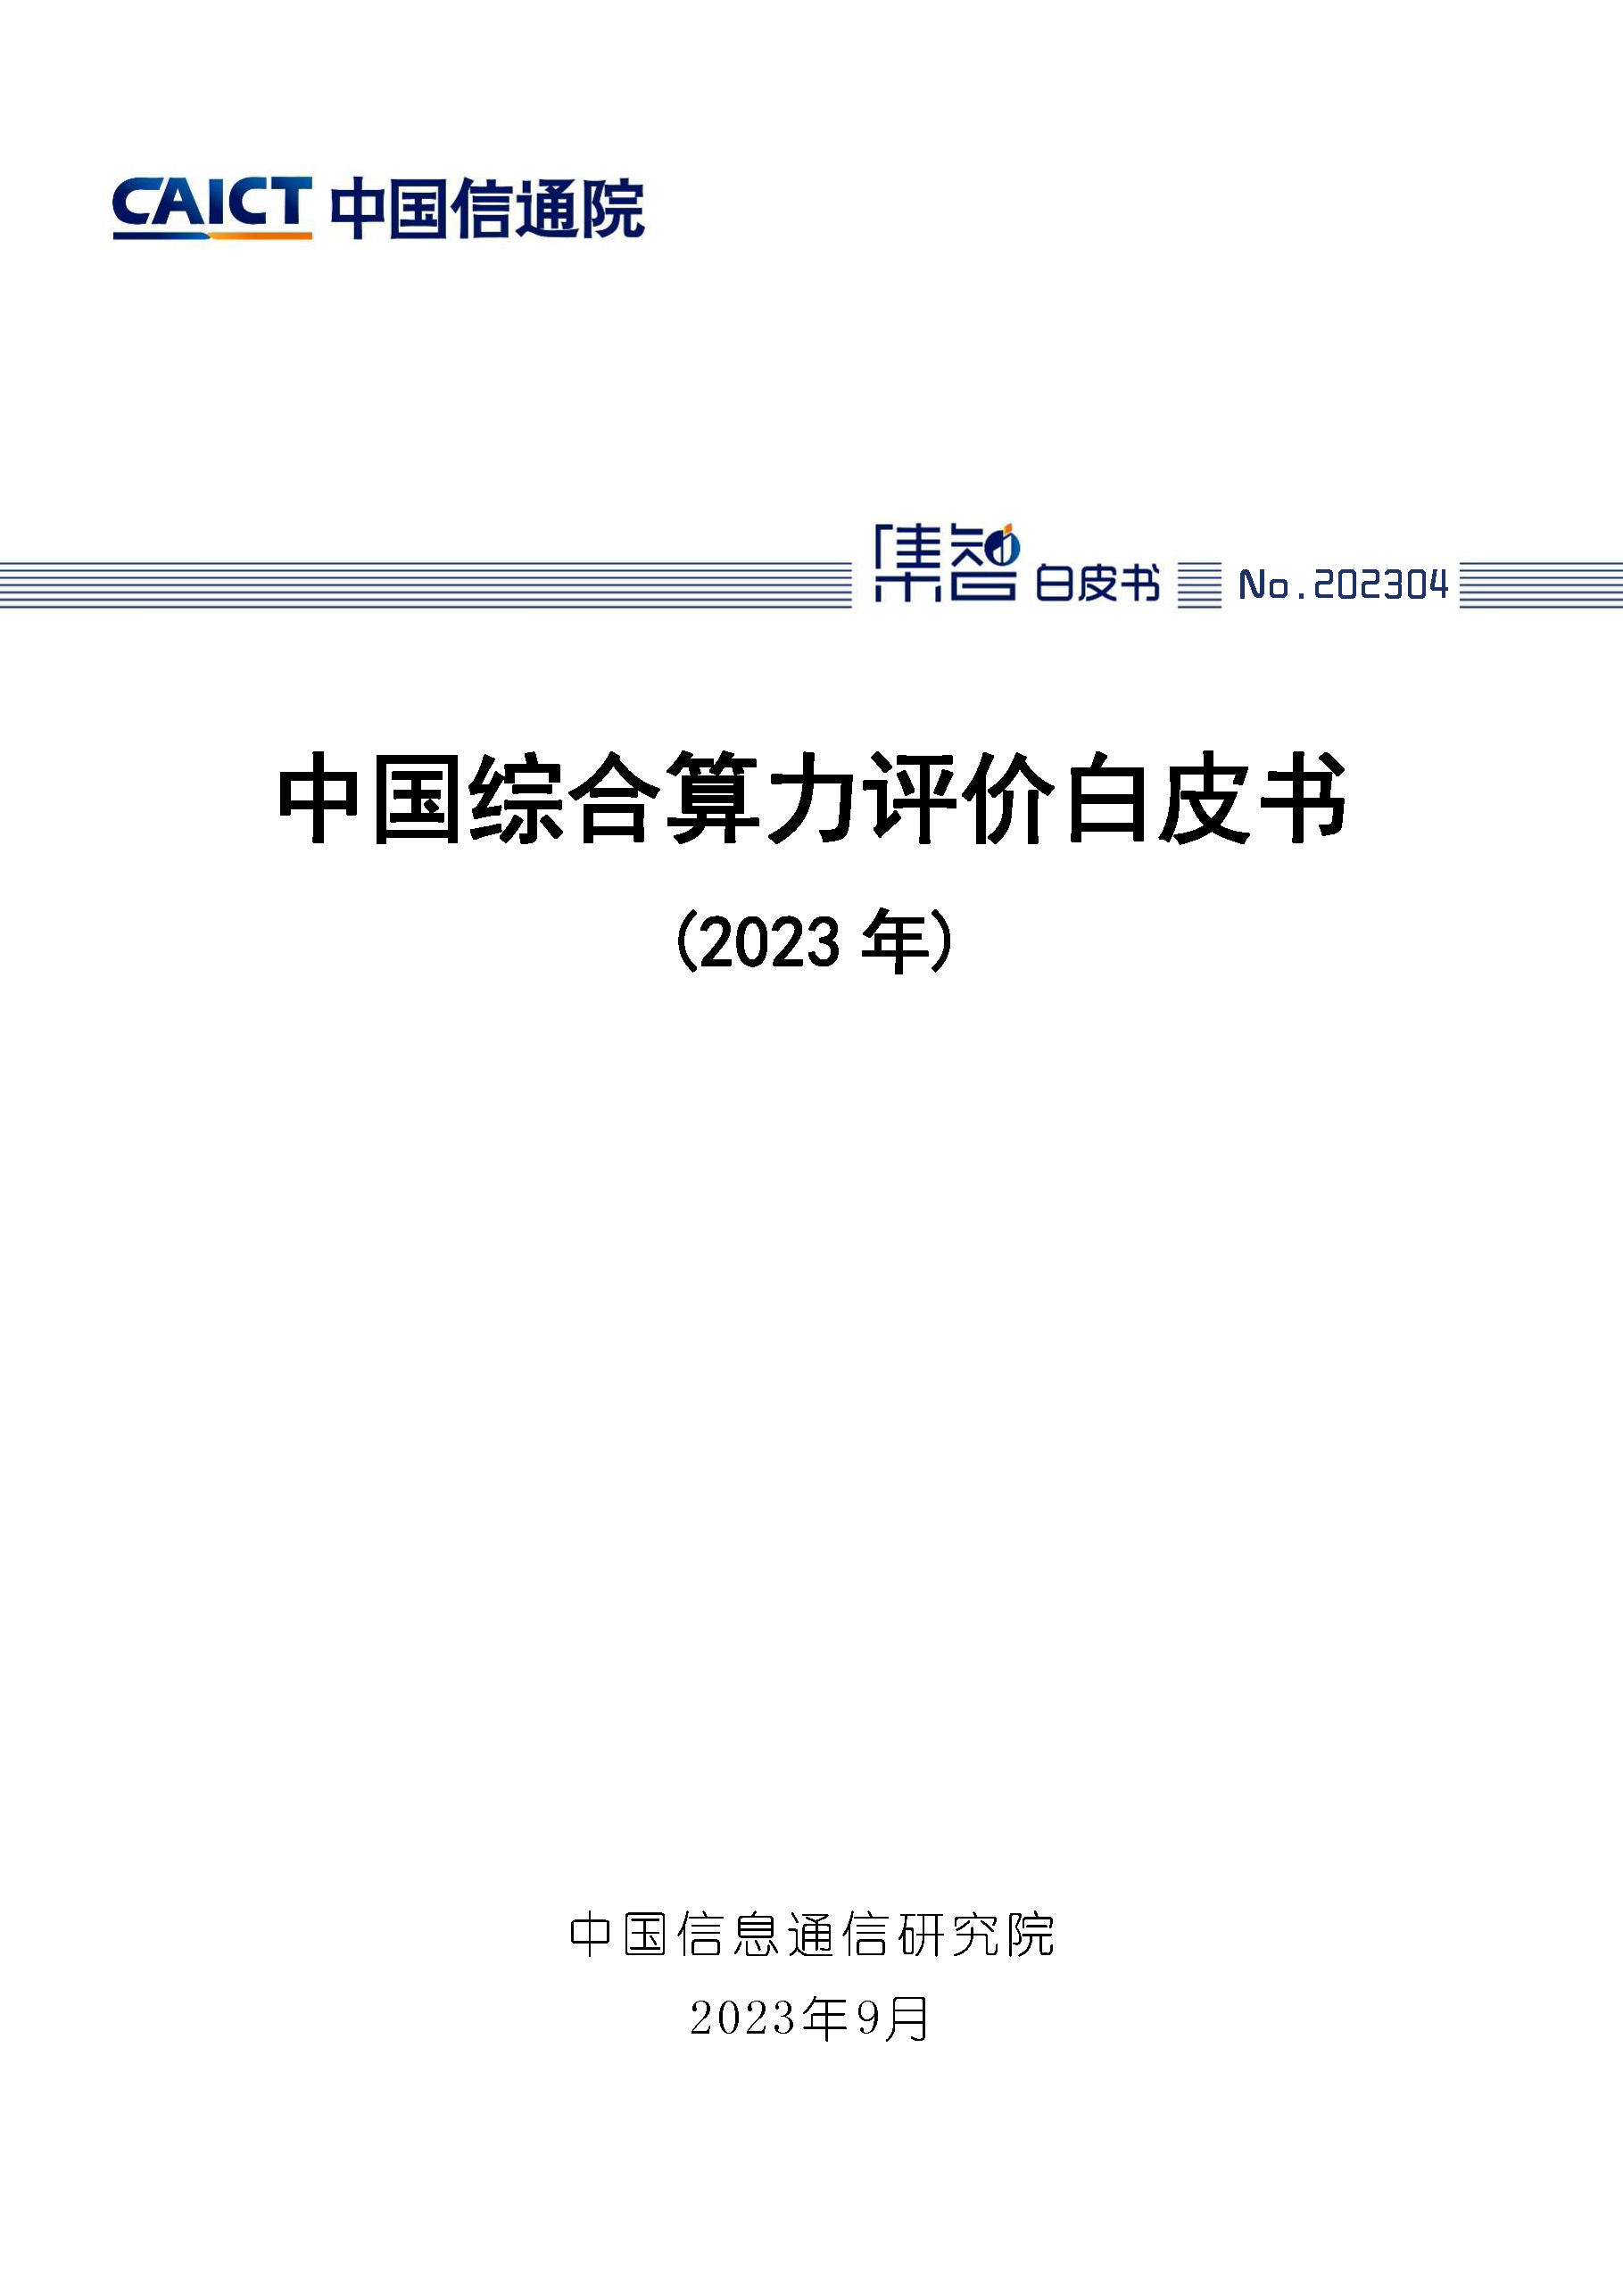 中国综合算力评价白皮书（2023年）首页.png